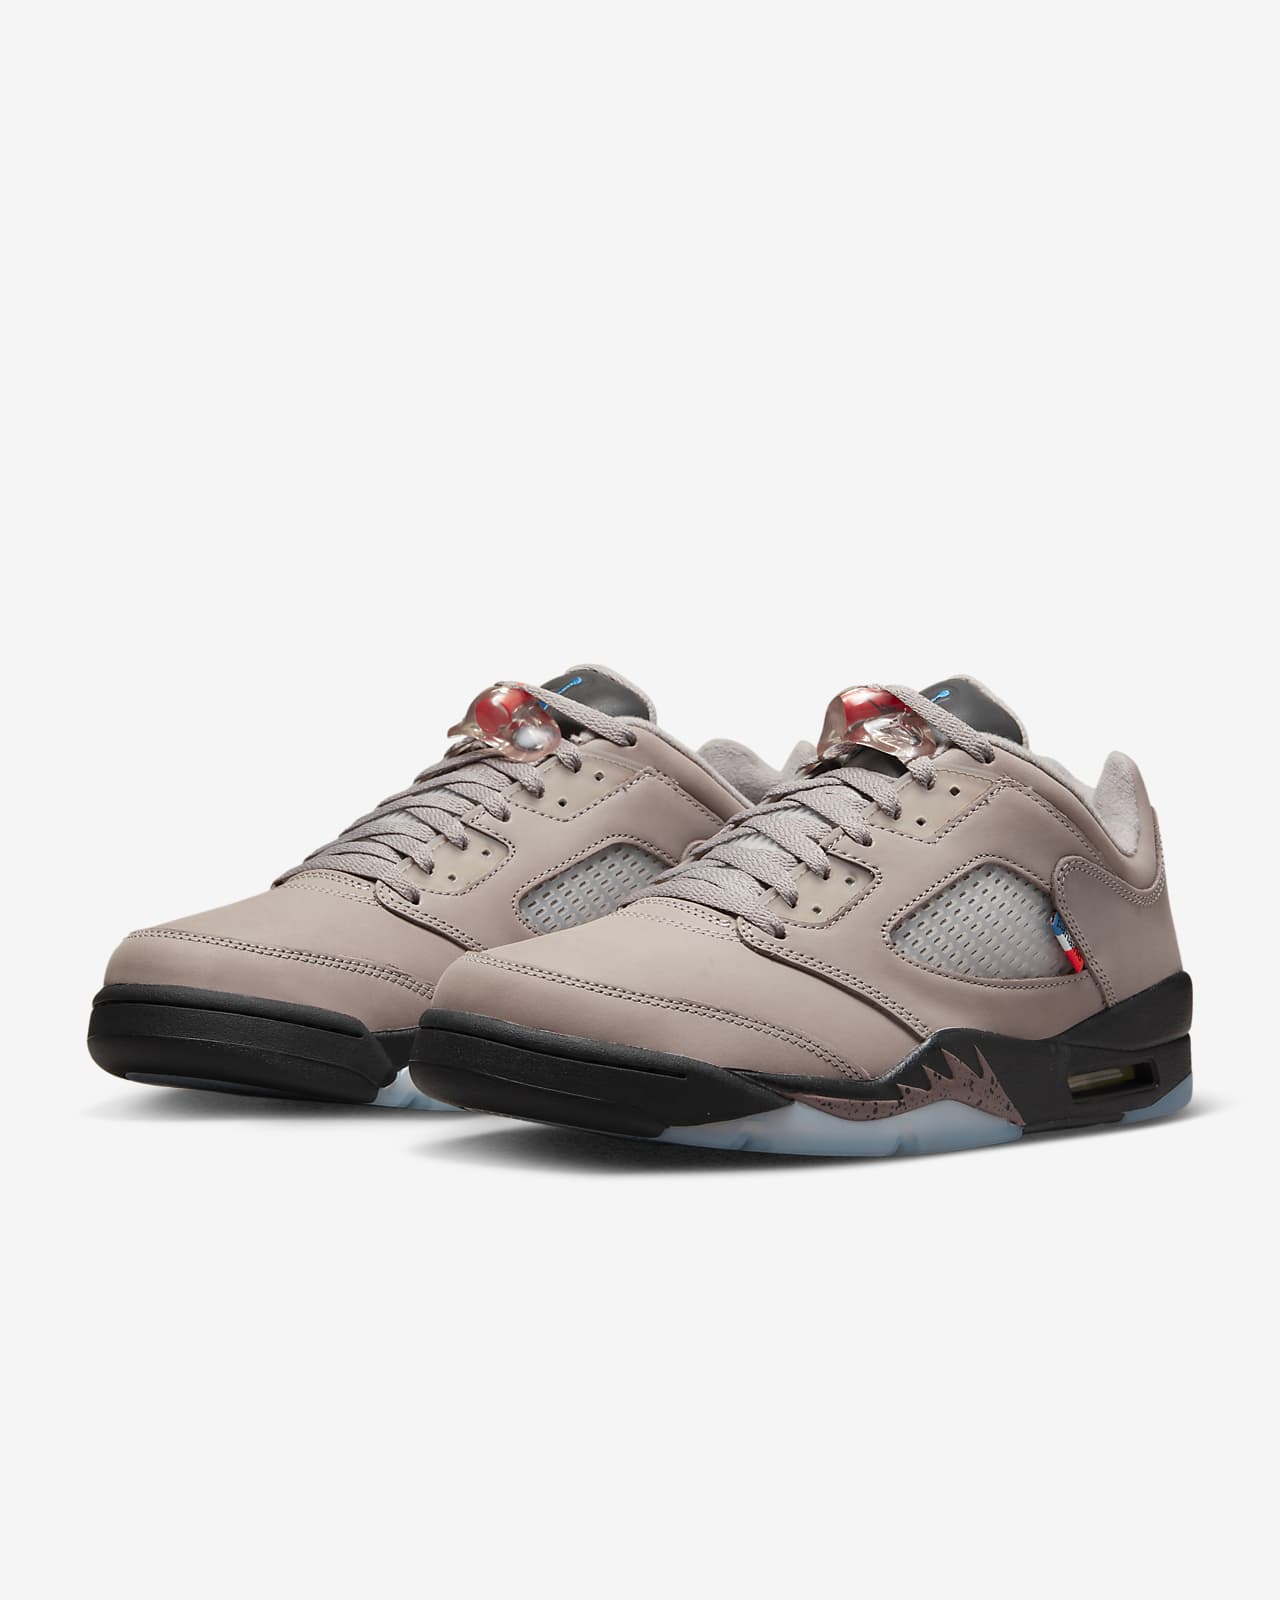 Air Jordan 5 men's nike air jordan v shoes Retro Low PSG Men's Shoes